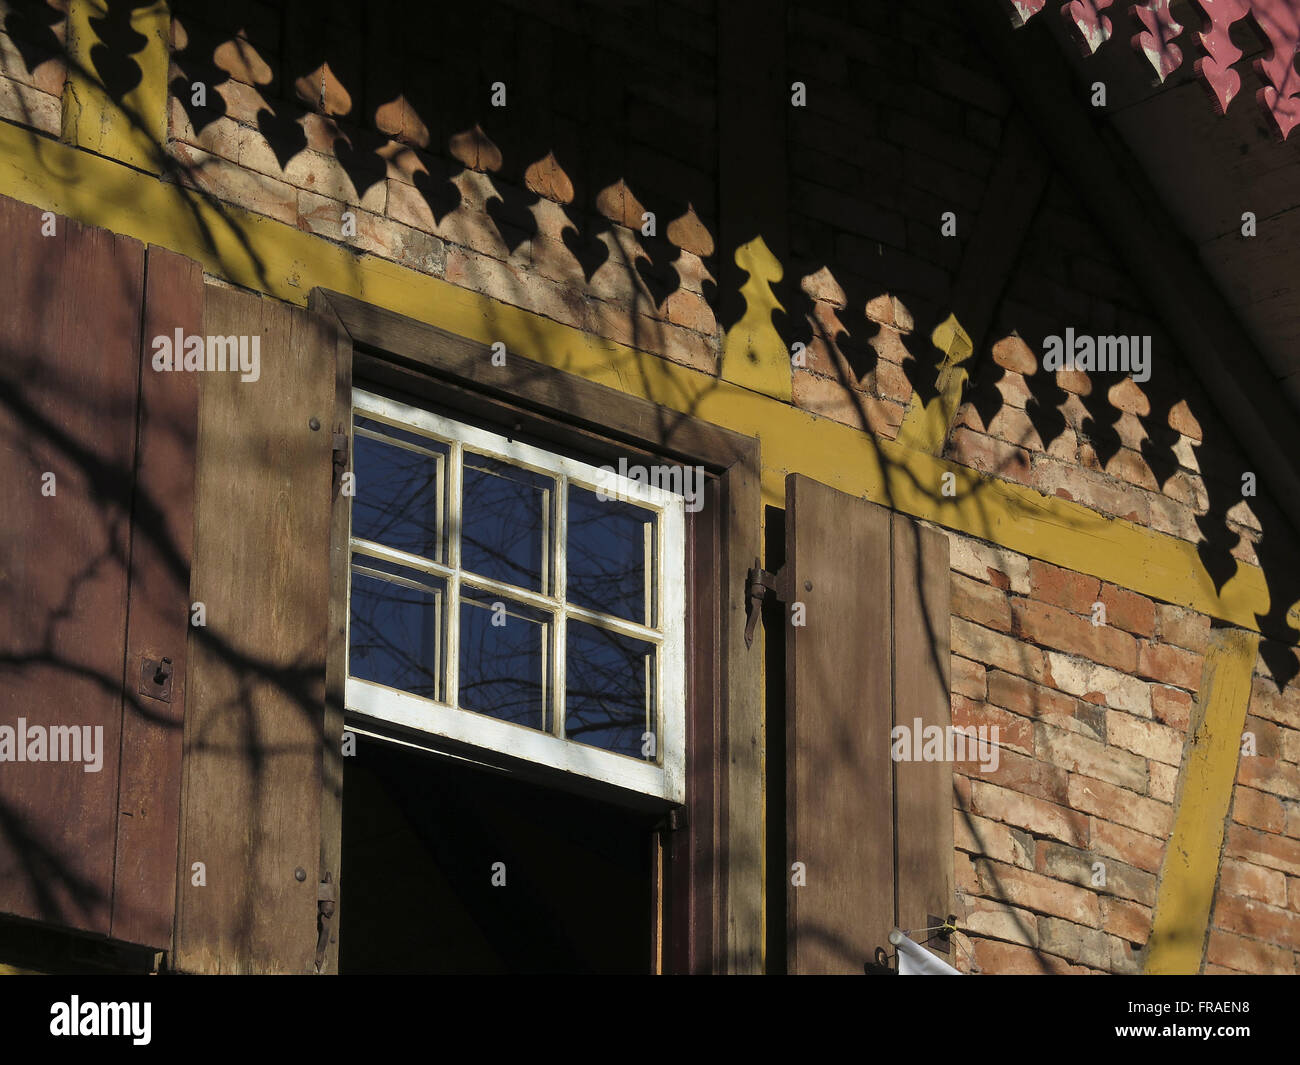 Chiudi la finestra immagini e fotografie stock ad alta risoluzione - Alamy